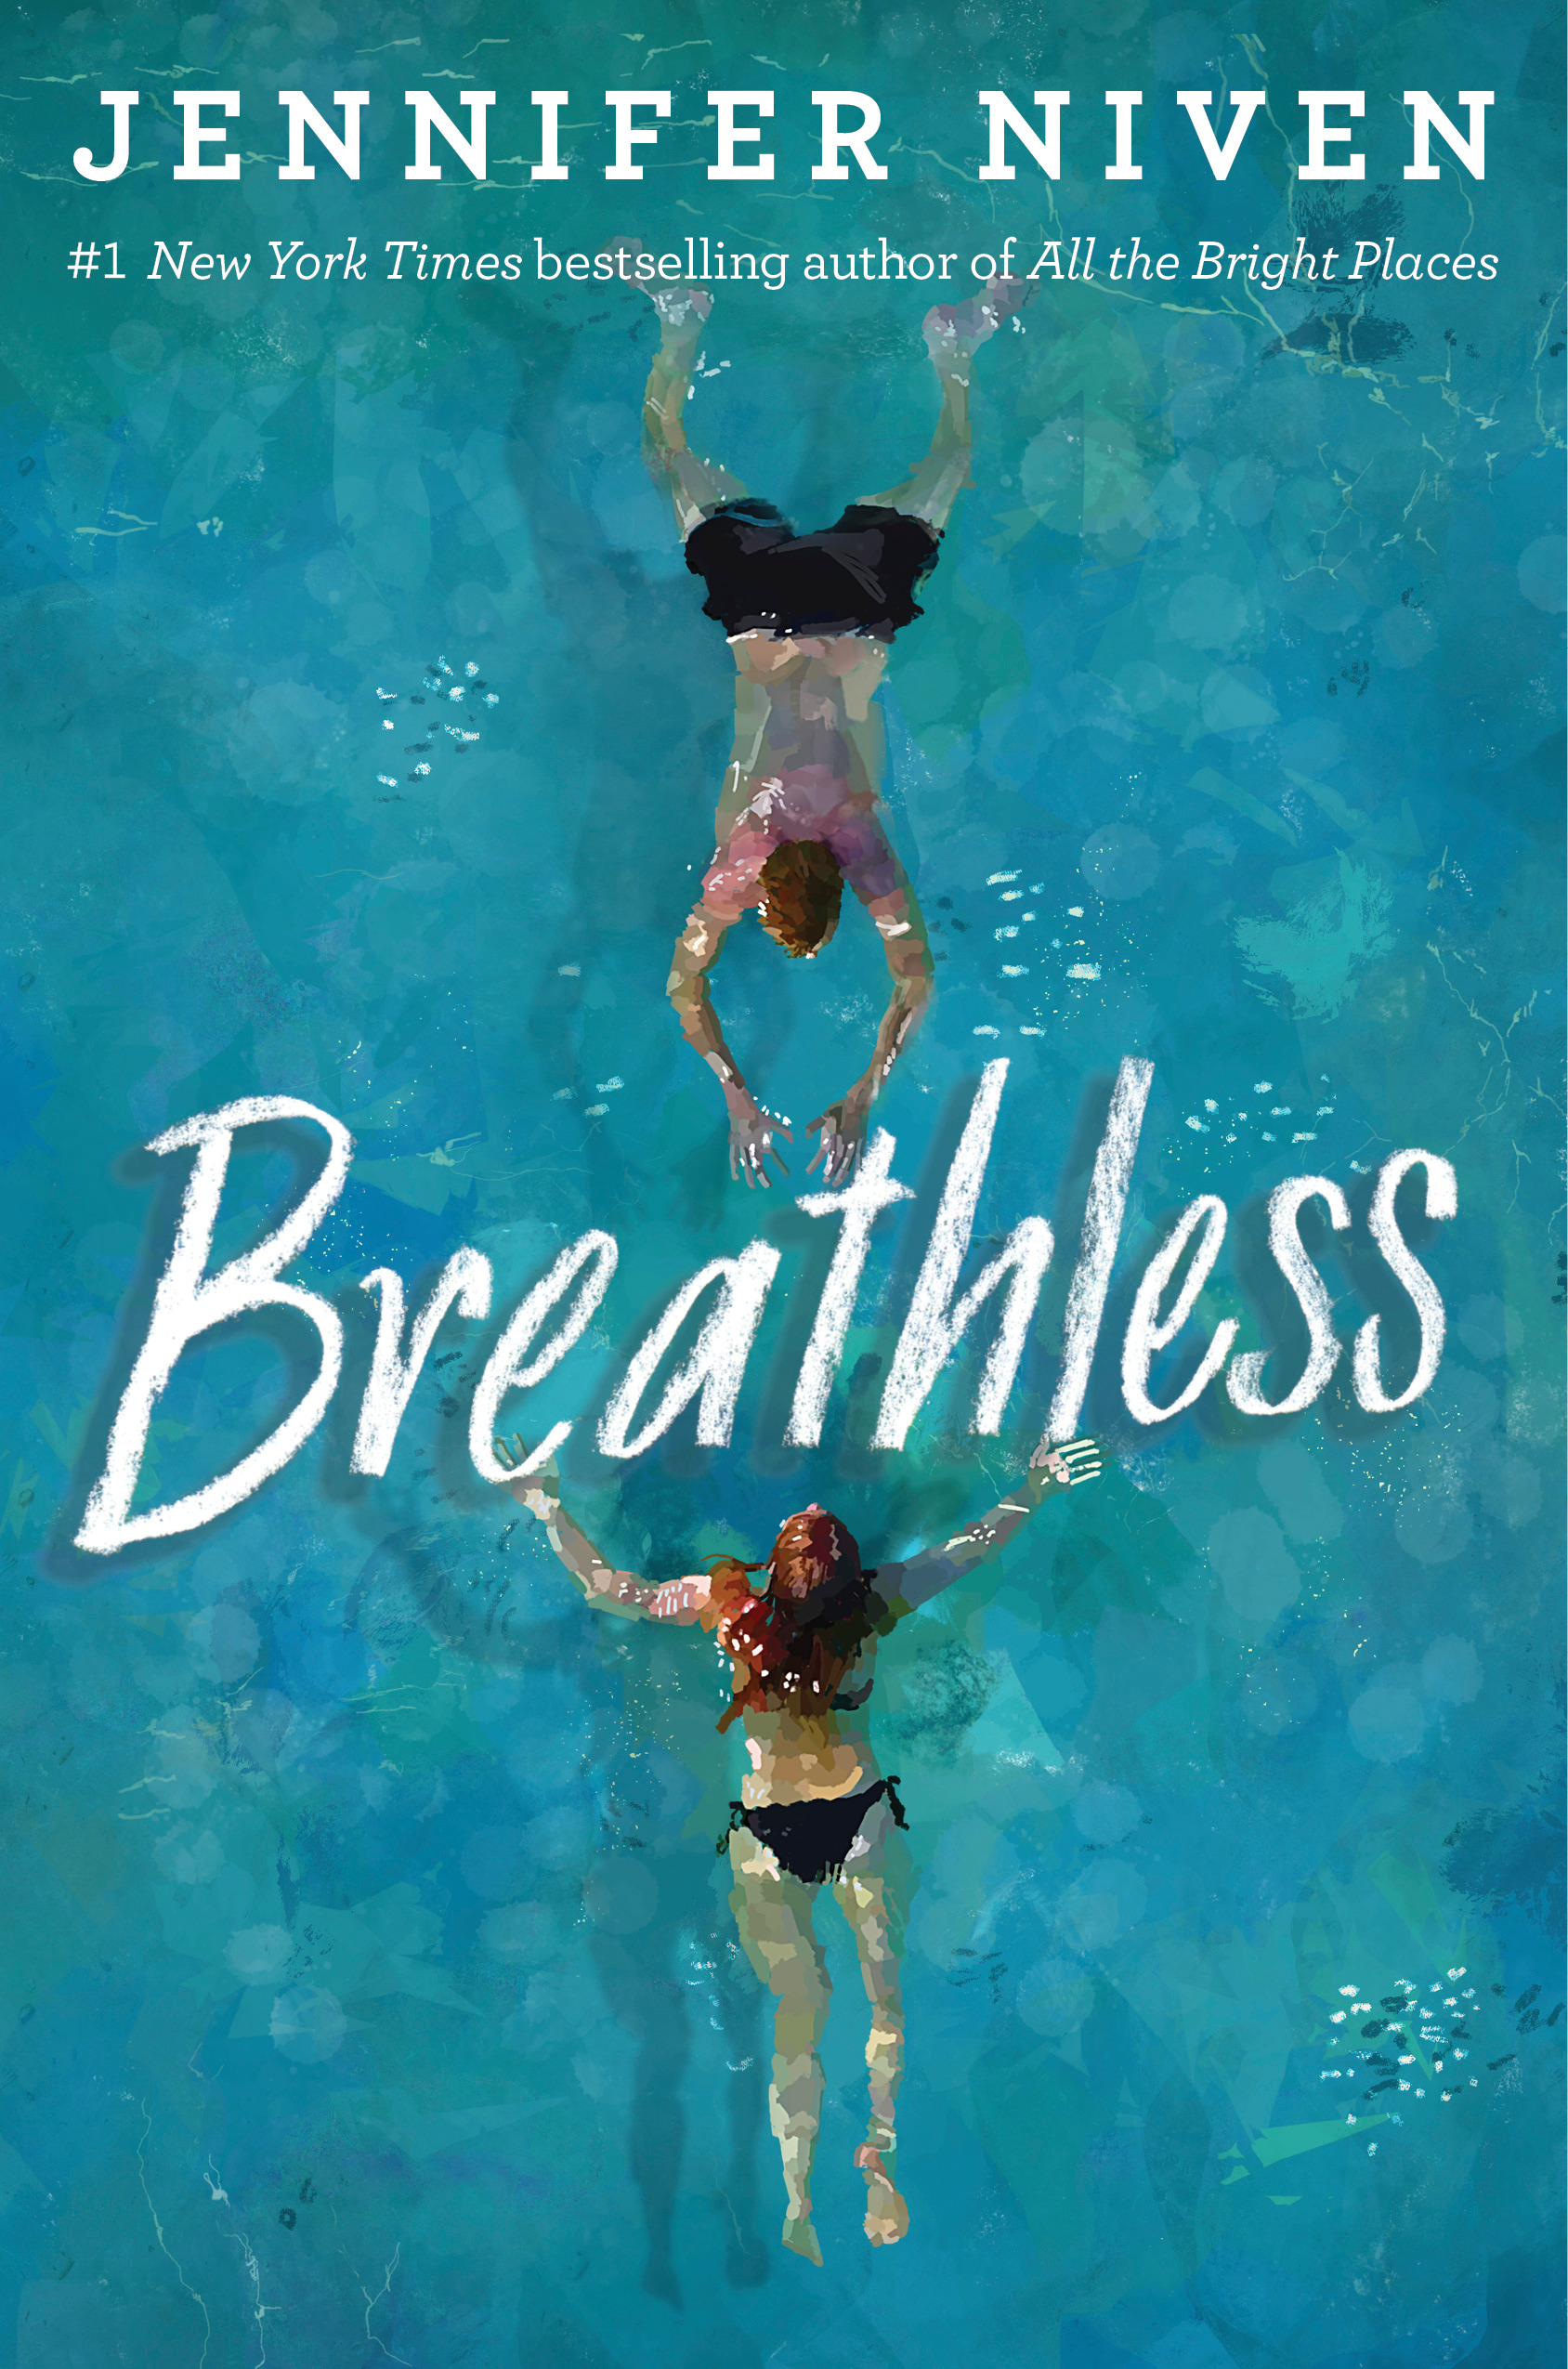 Breathless | Niven, Jennifer